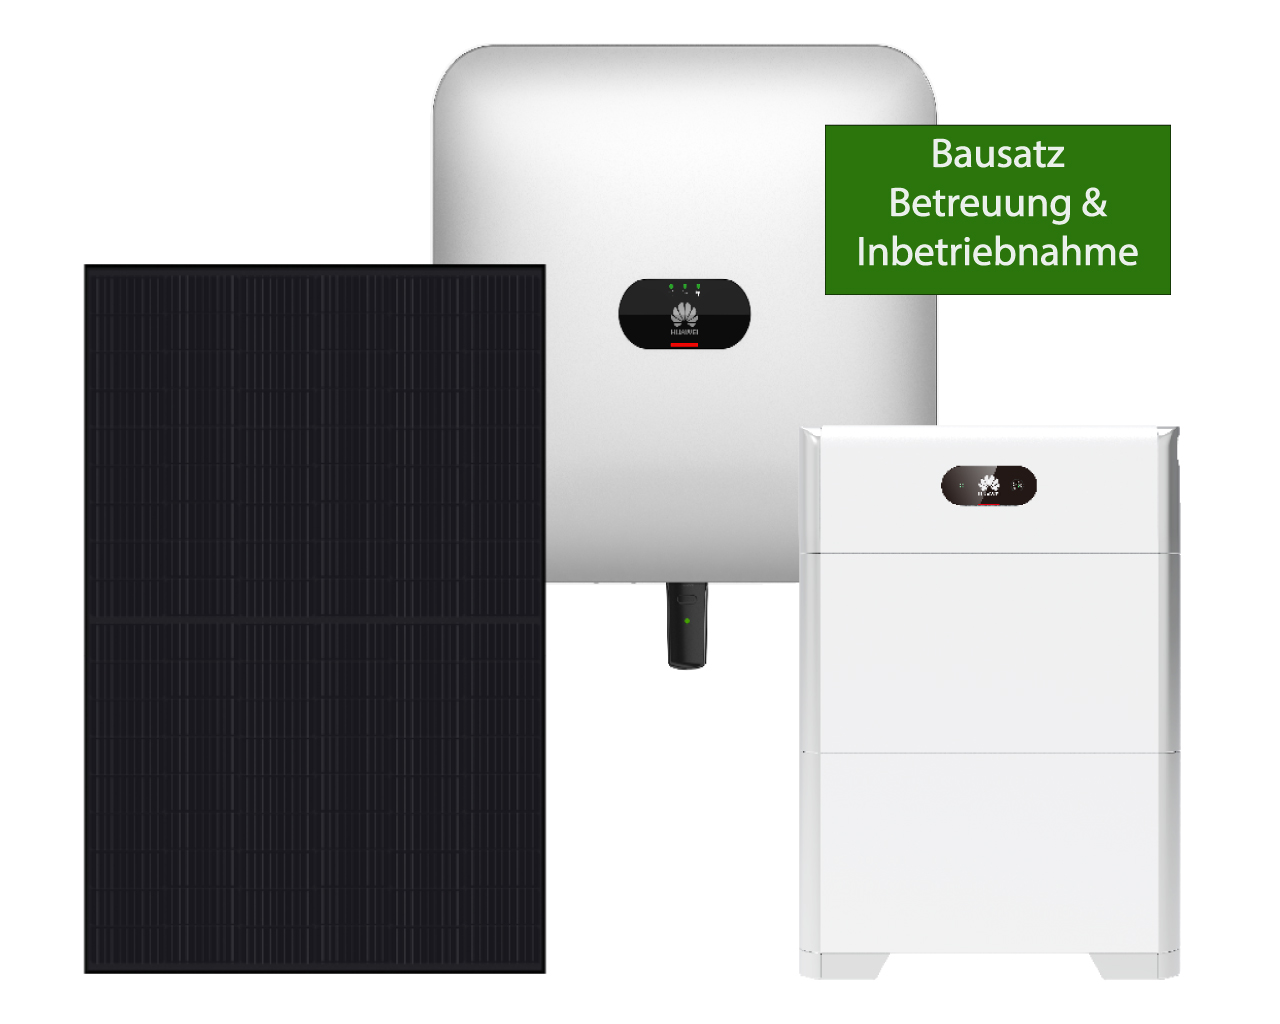 Huawei - Solarpaket Starter Plus - Bis 8000 kWh Jahresverbrauch - Baussatz